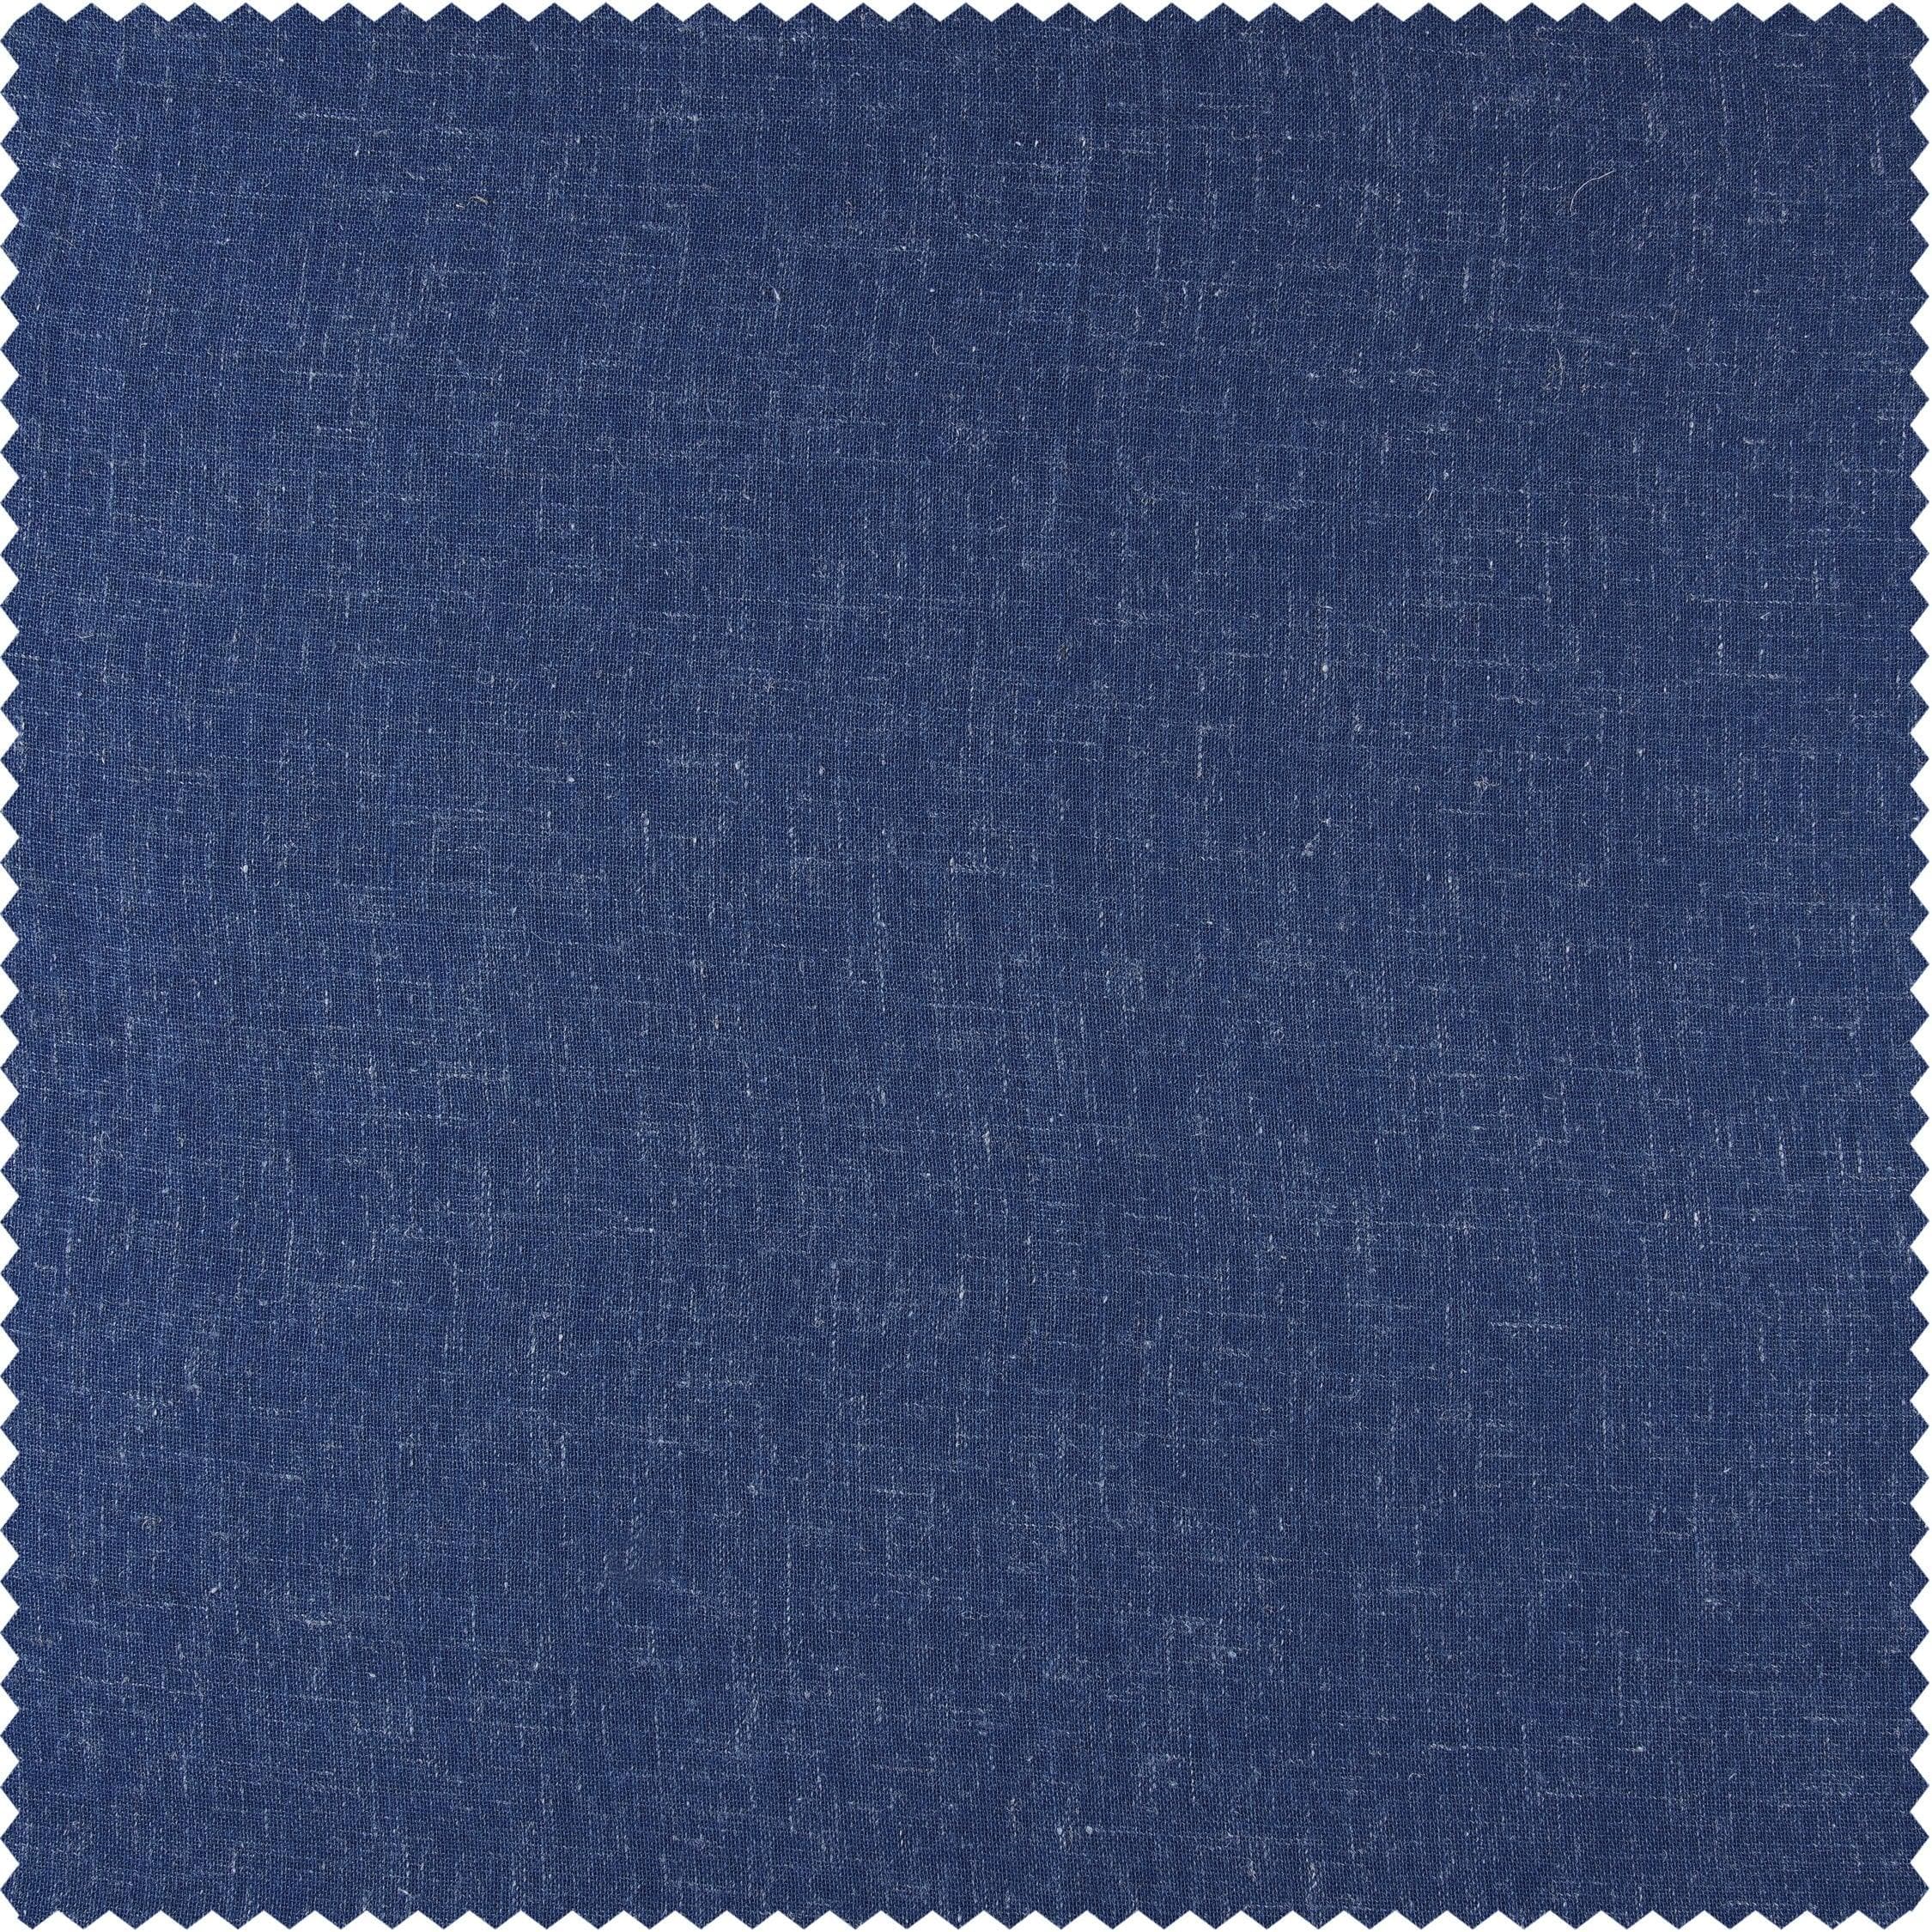 Blue Lapis Textured Faux Linen Swatch